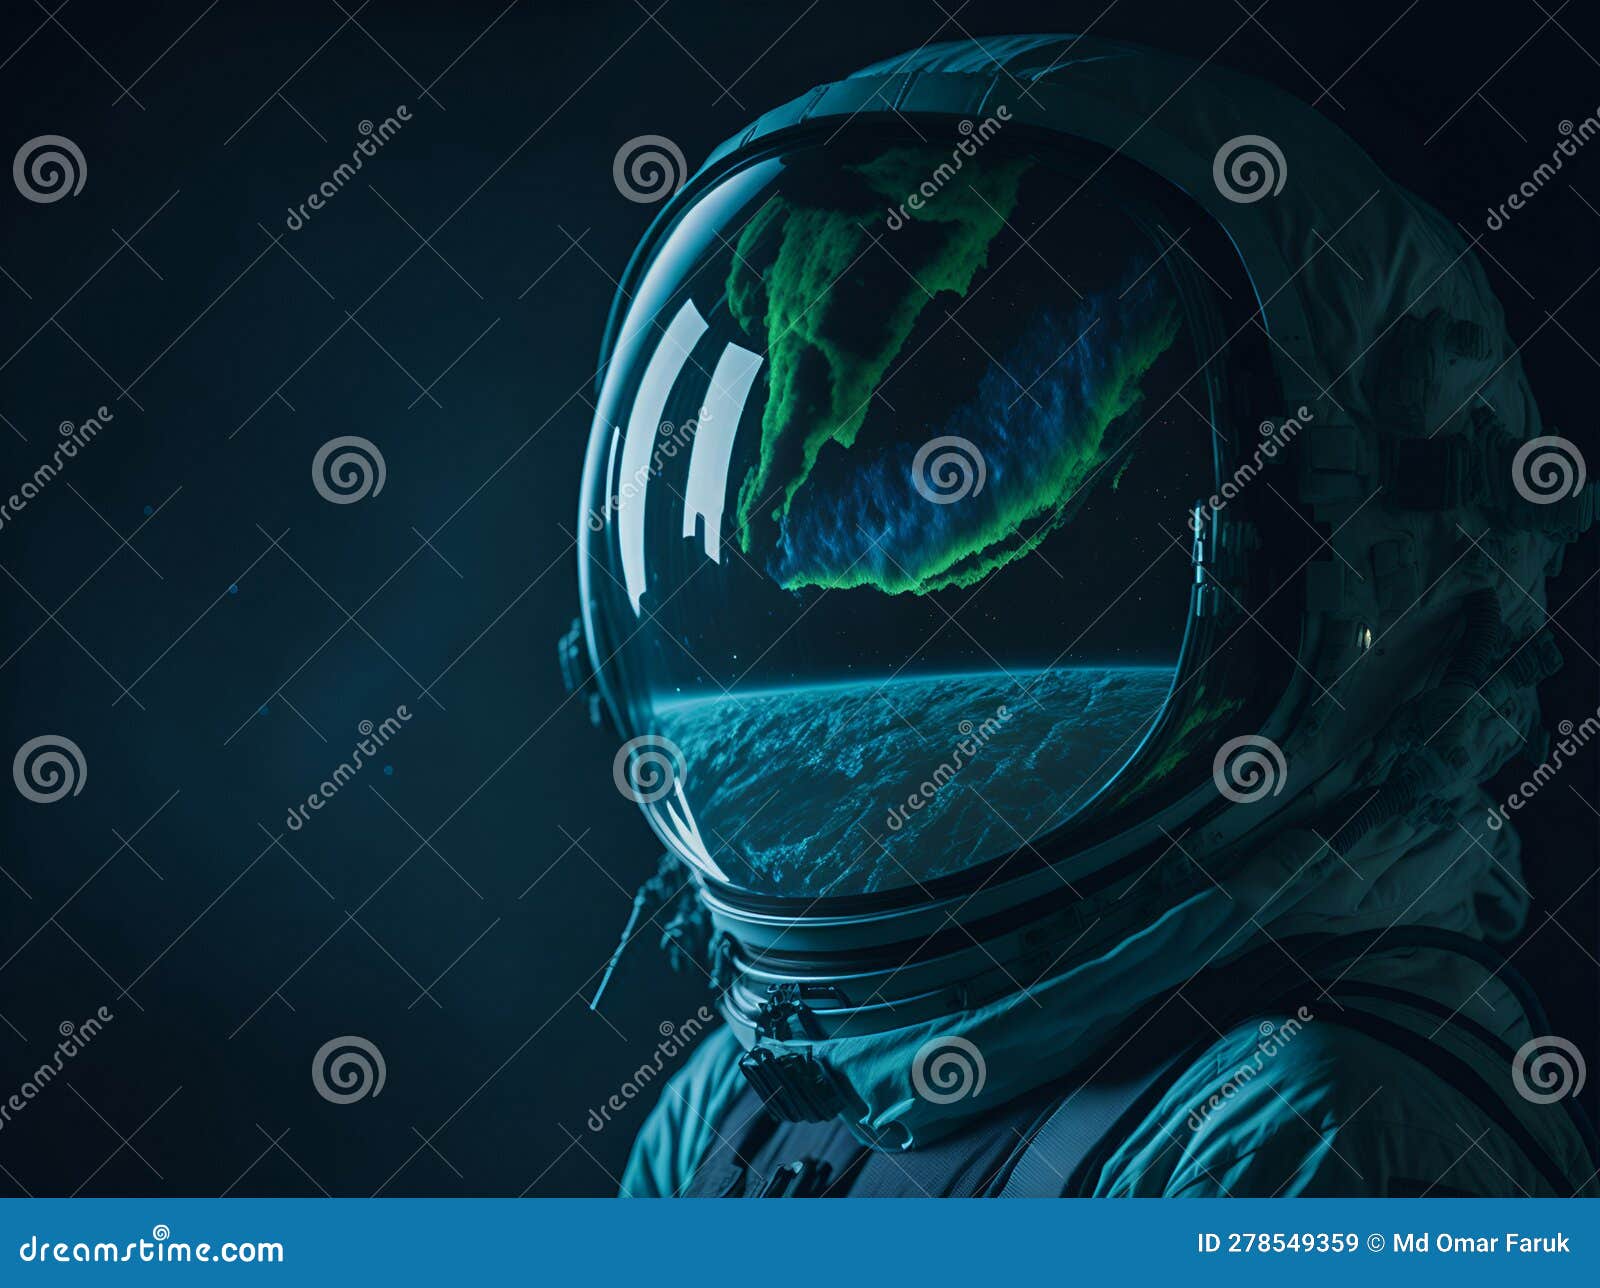 an astronautâs helmet mirror of the earth and space.